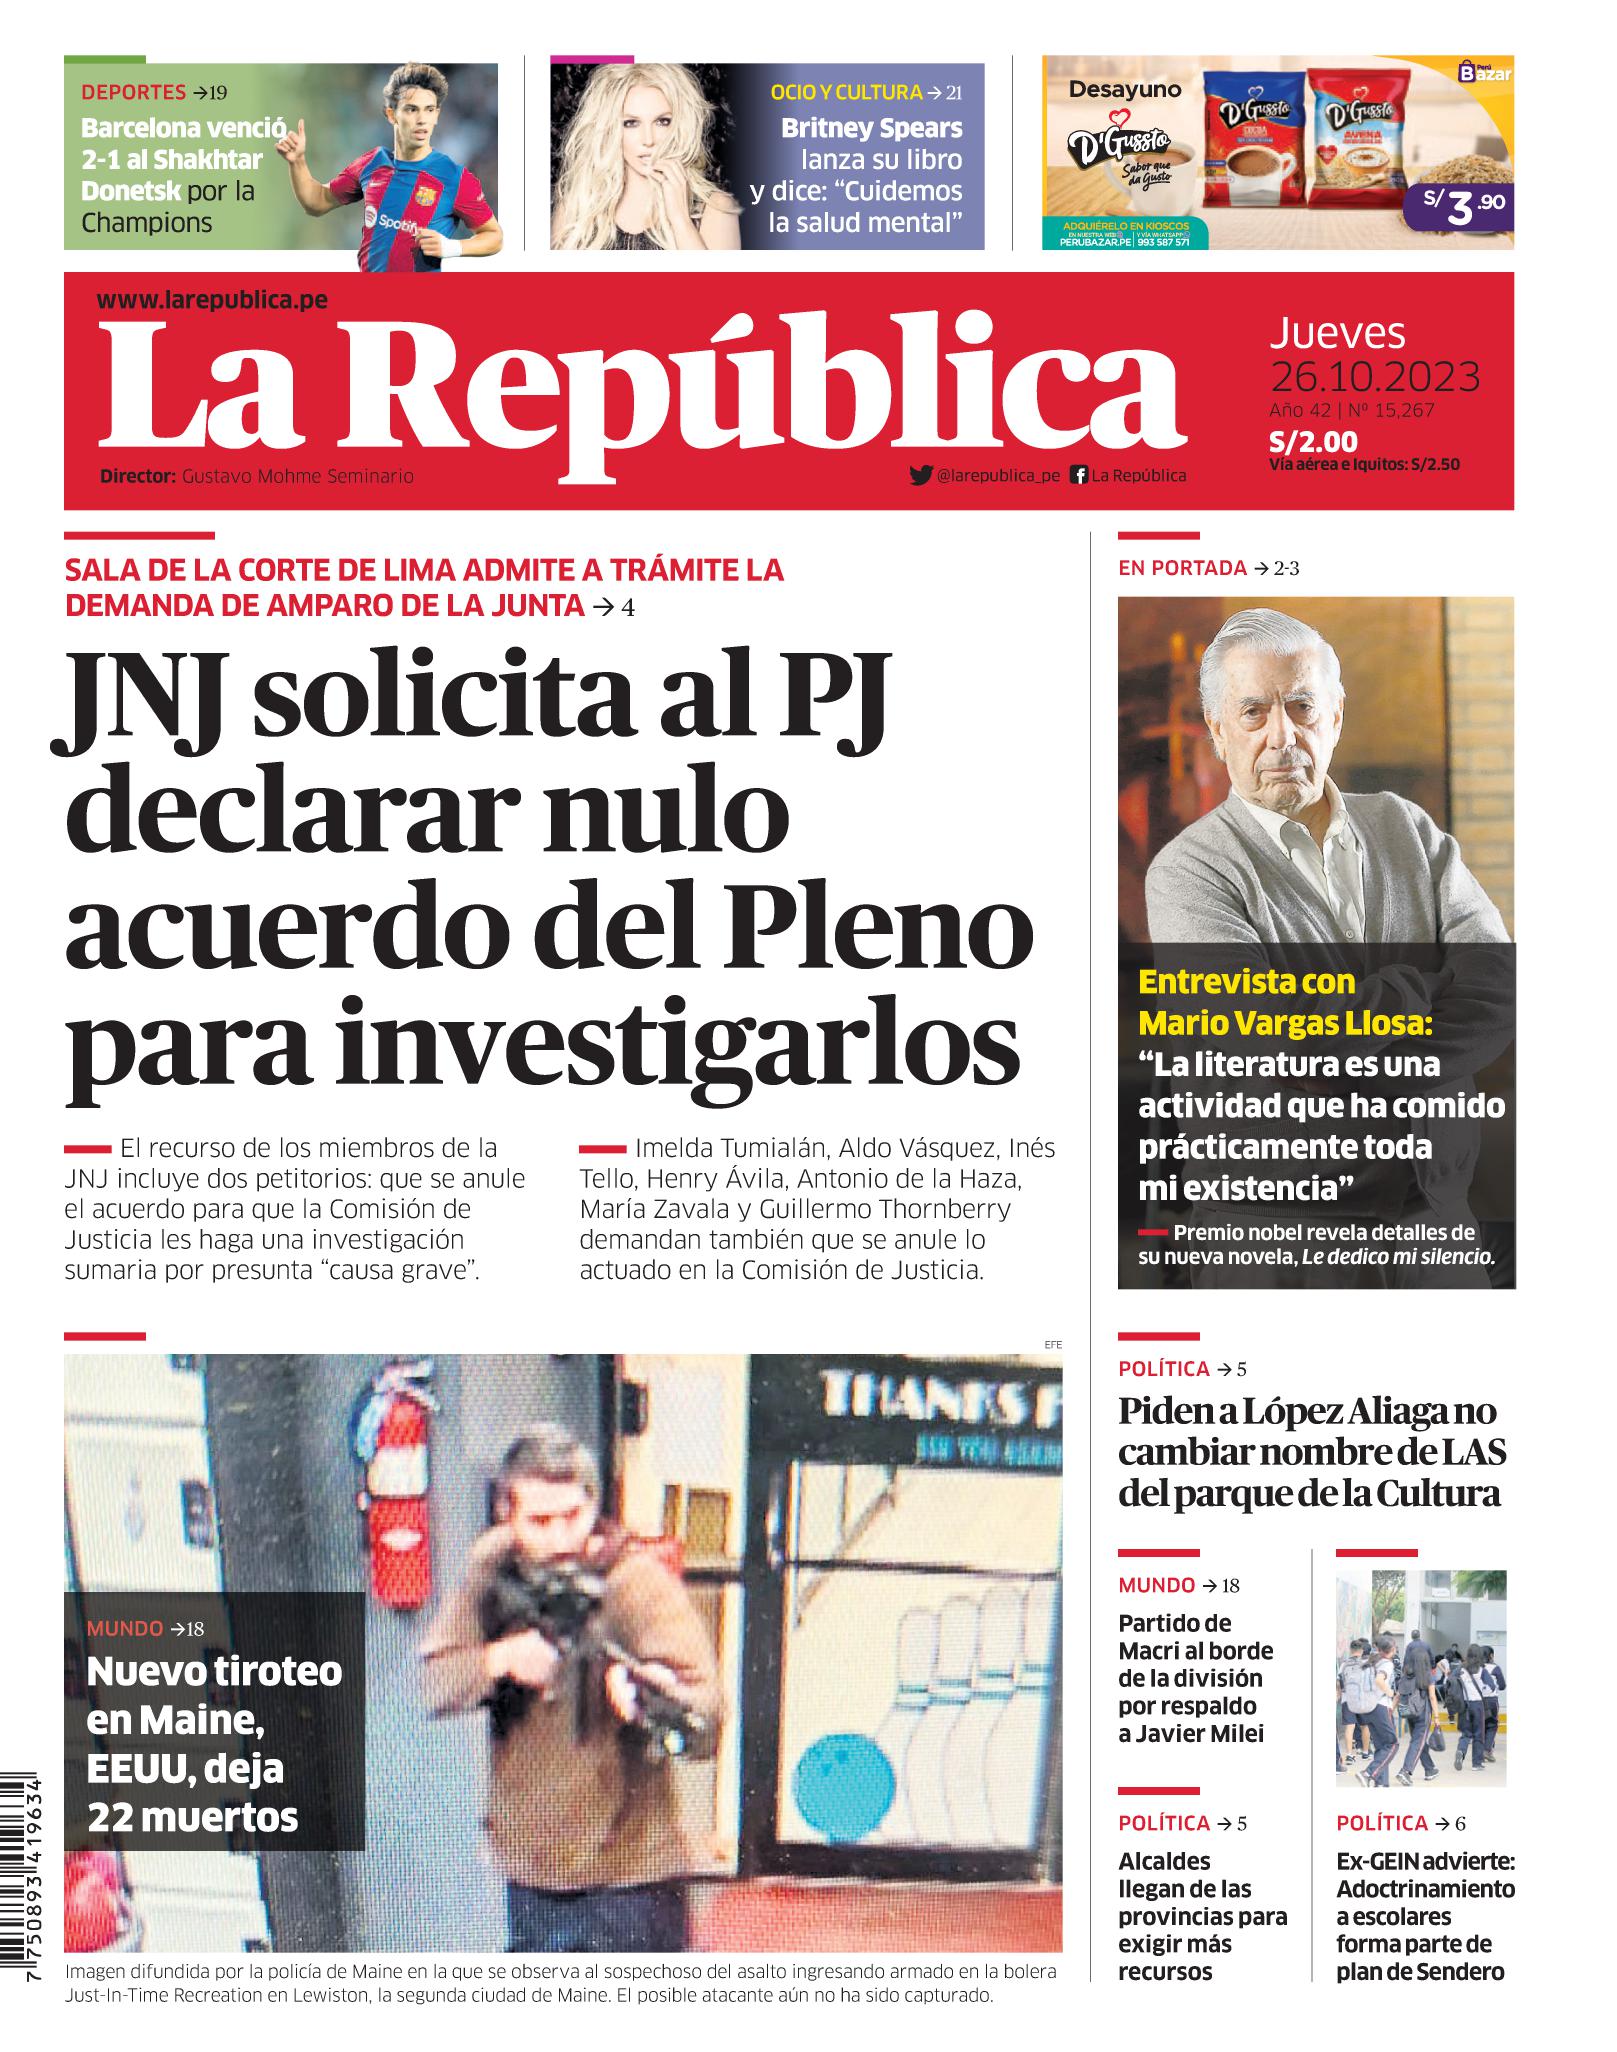 Noticias de política del Perú - Página 3 01